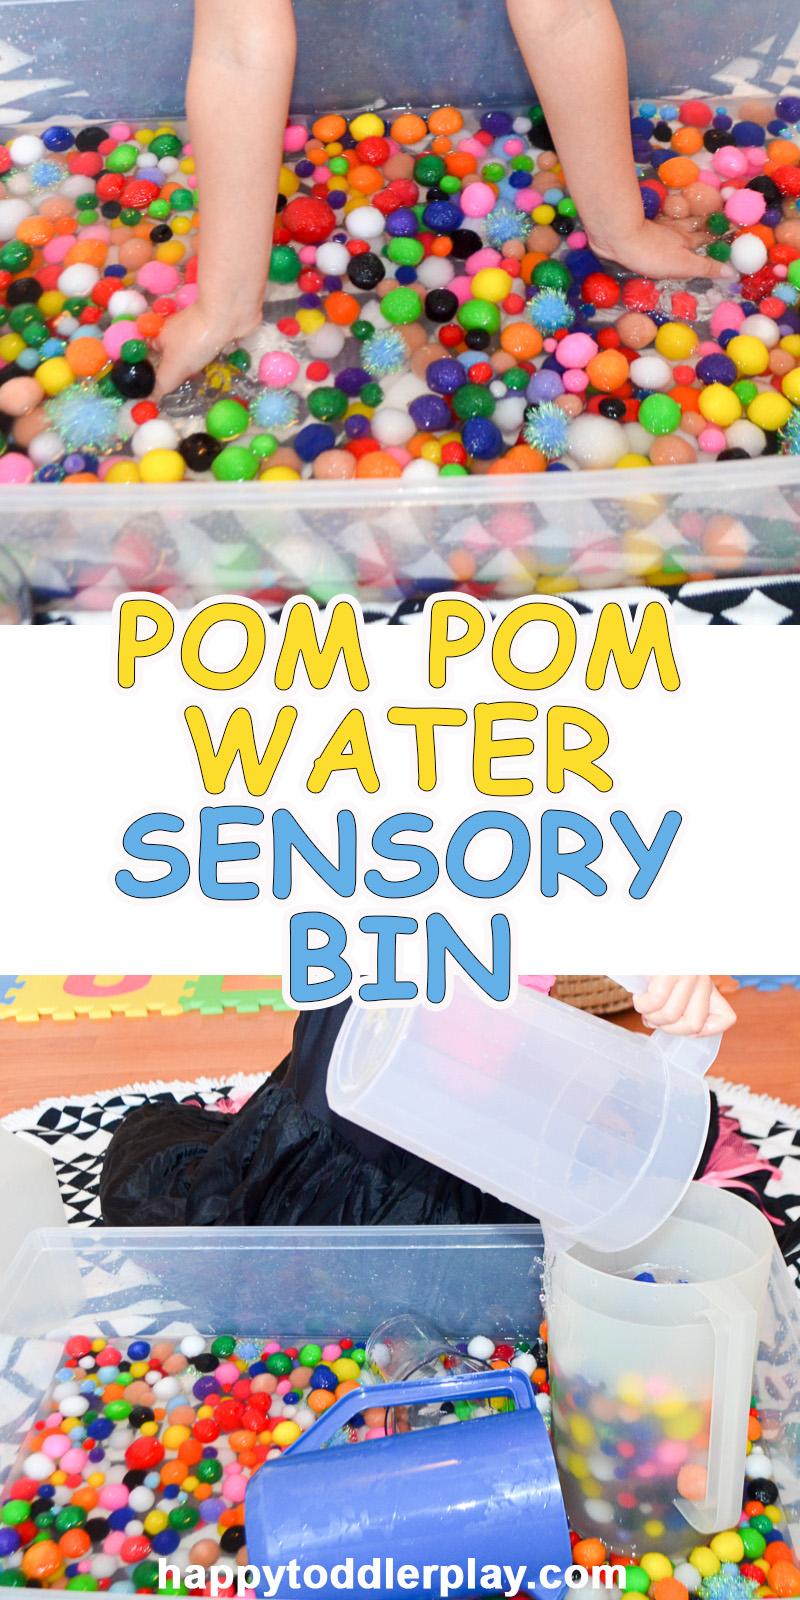 Pom Pom water sensory bin